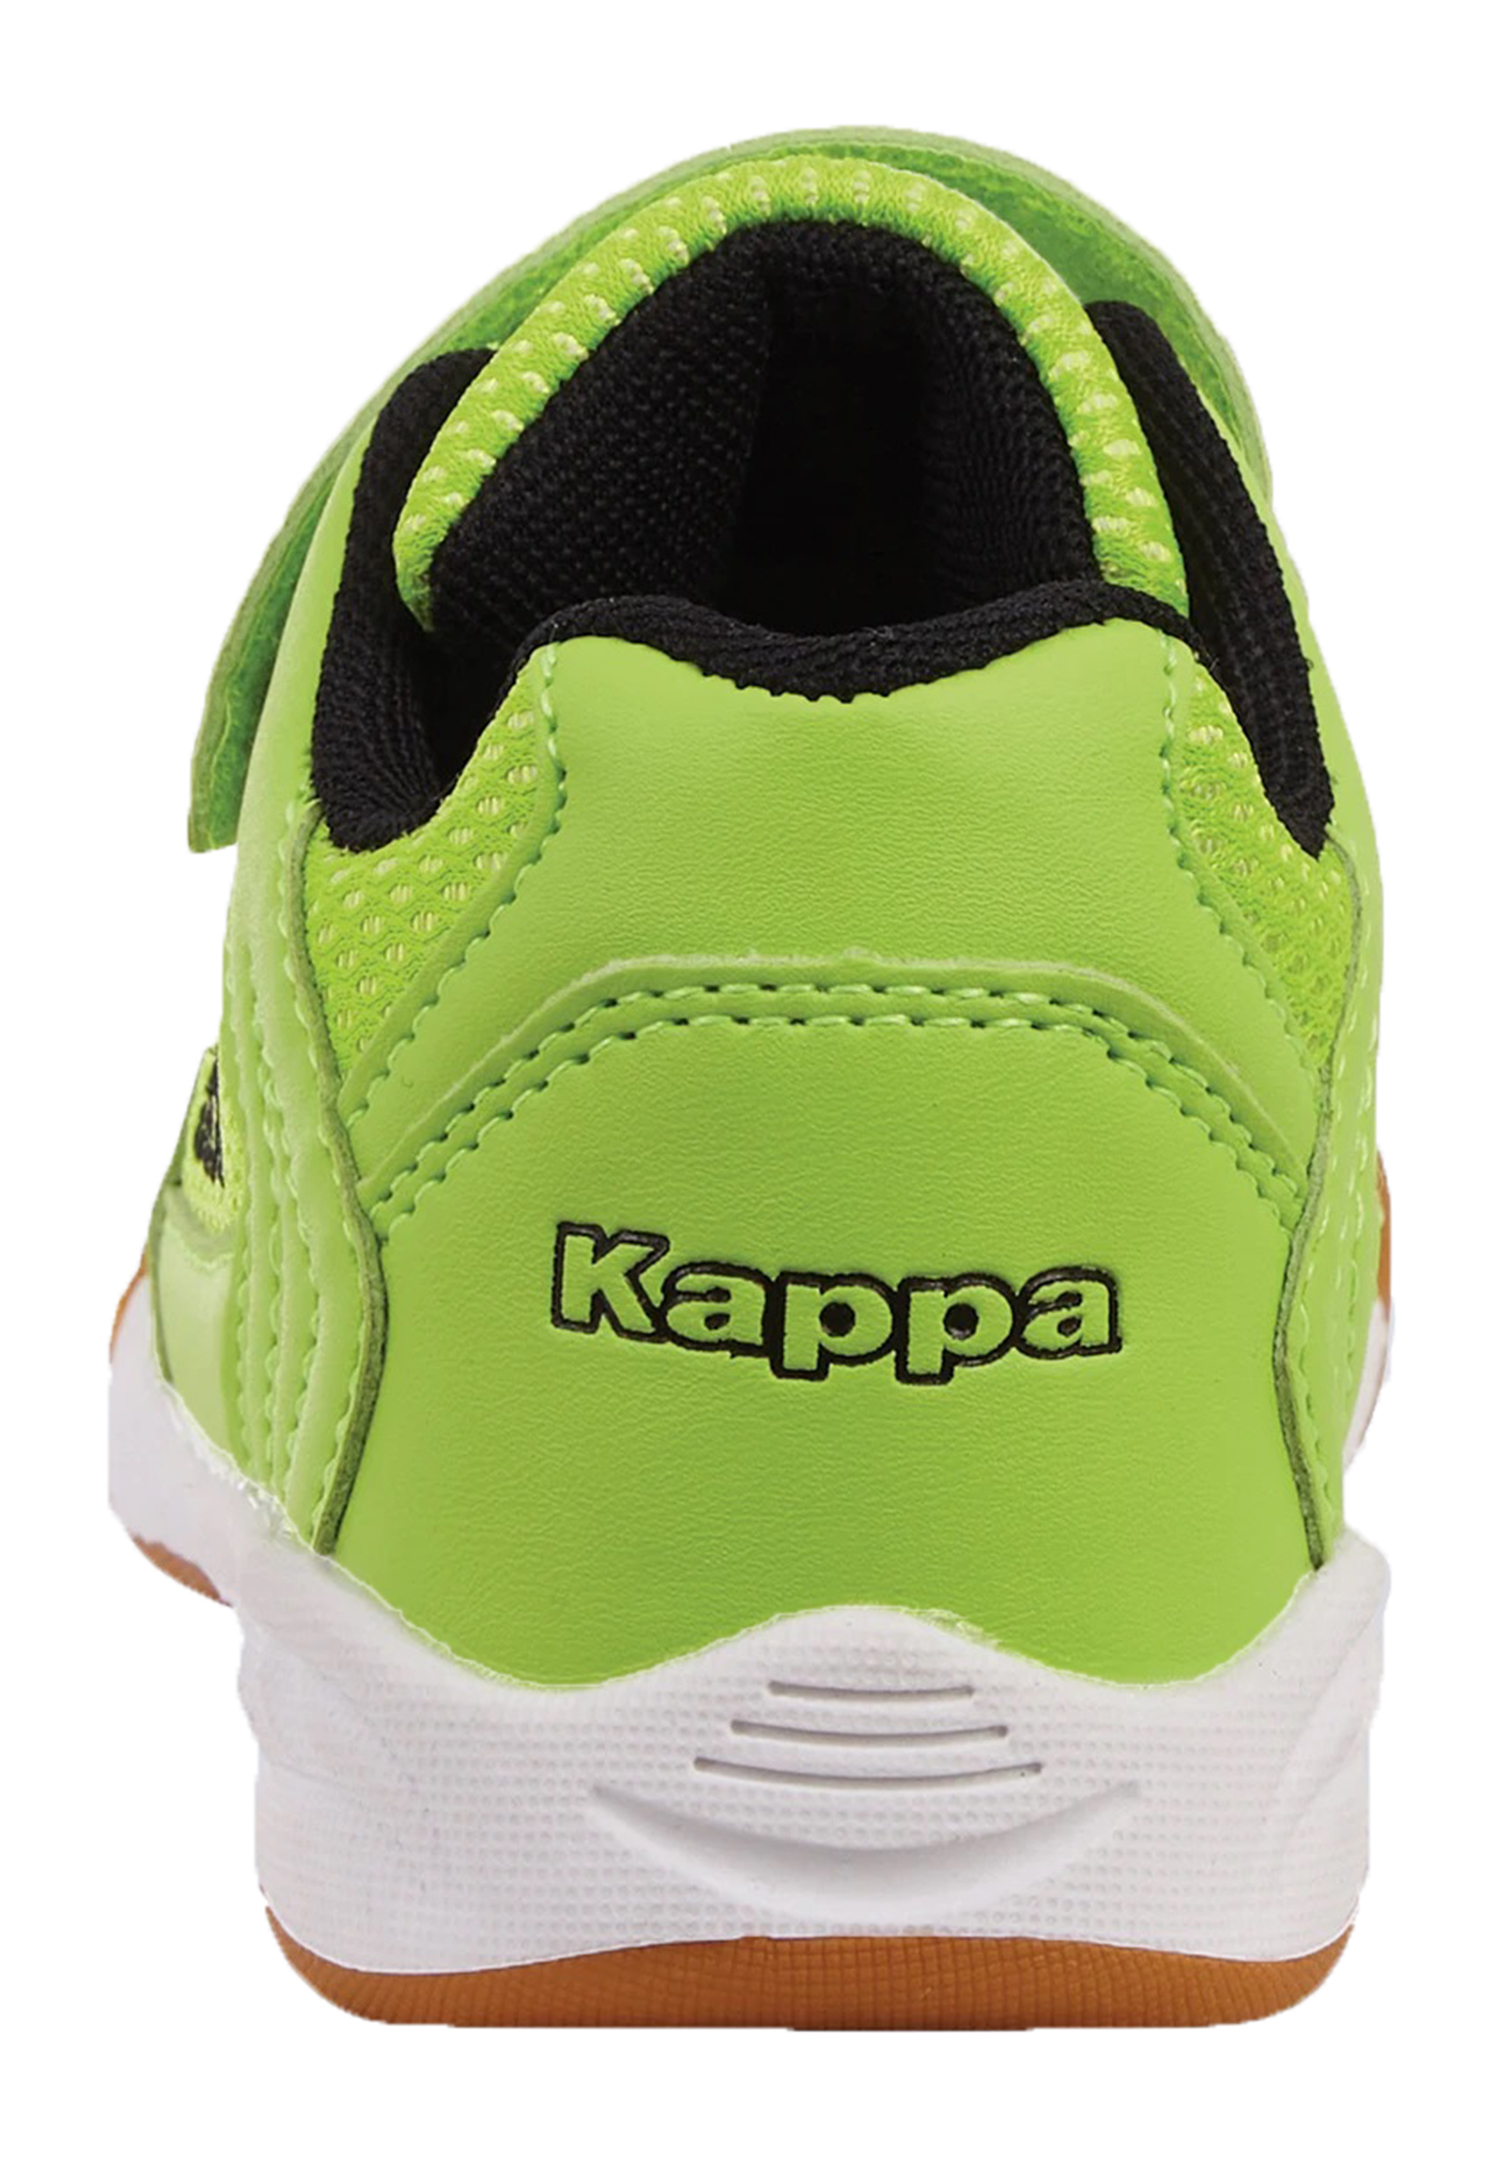 Kappa Kinder Sneaker Turnschuh 260765T 3011 grün